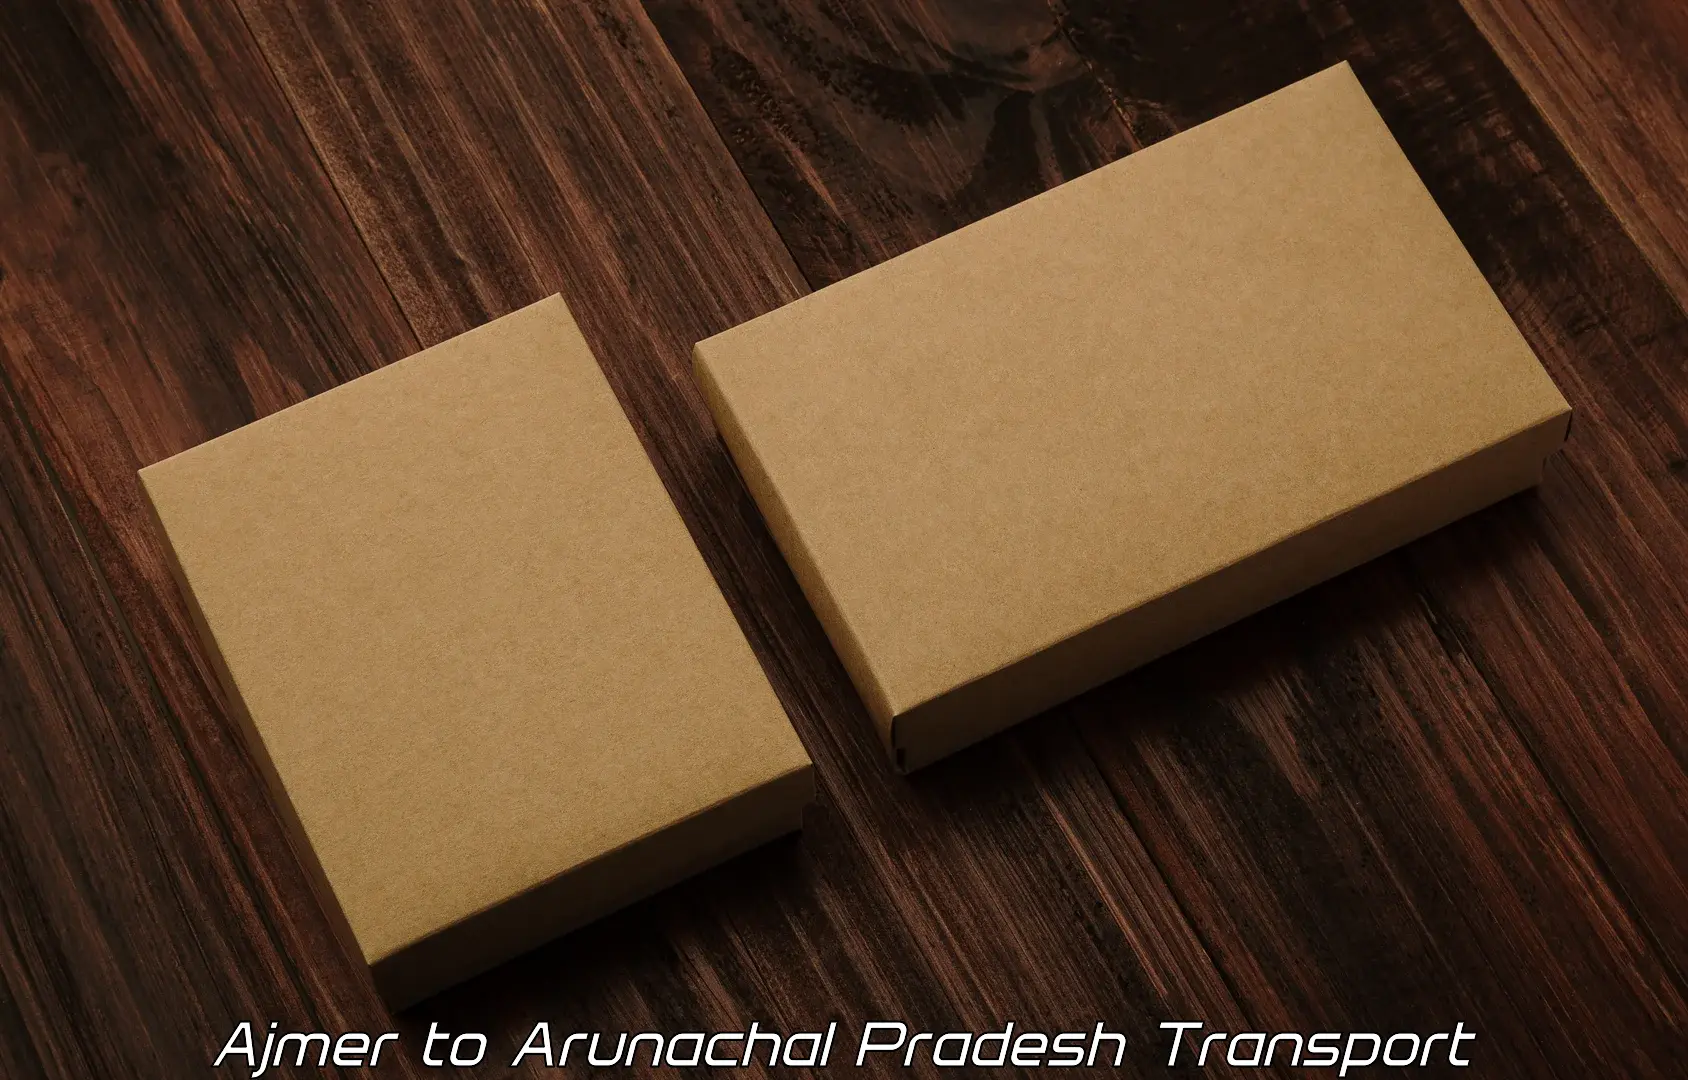 Two wheeler parcel service Ajmer to Arunachal Pradesh